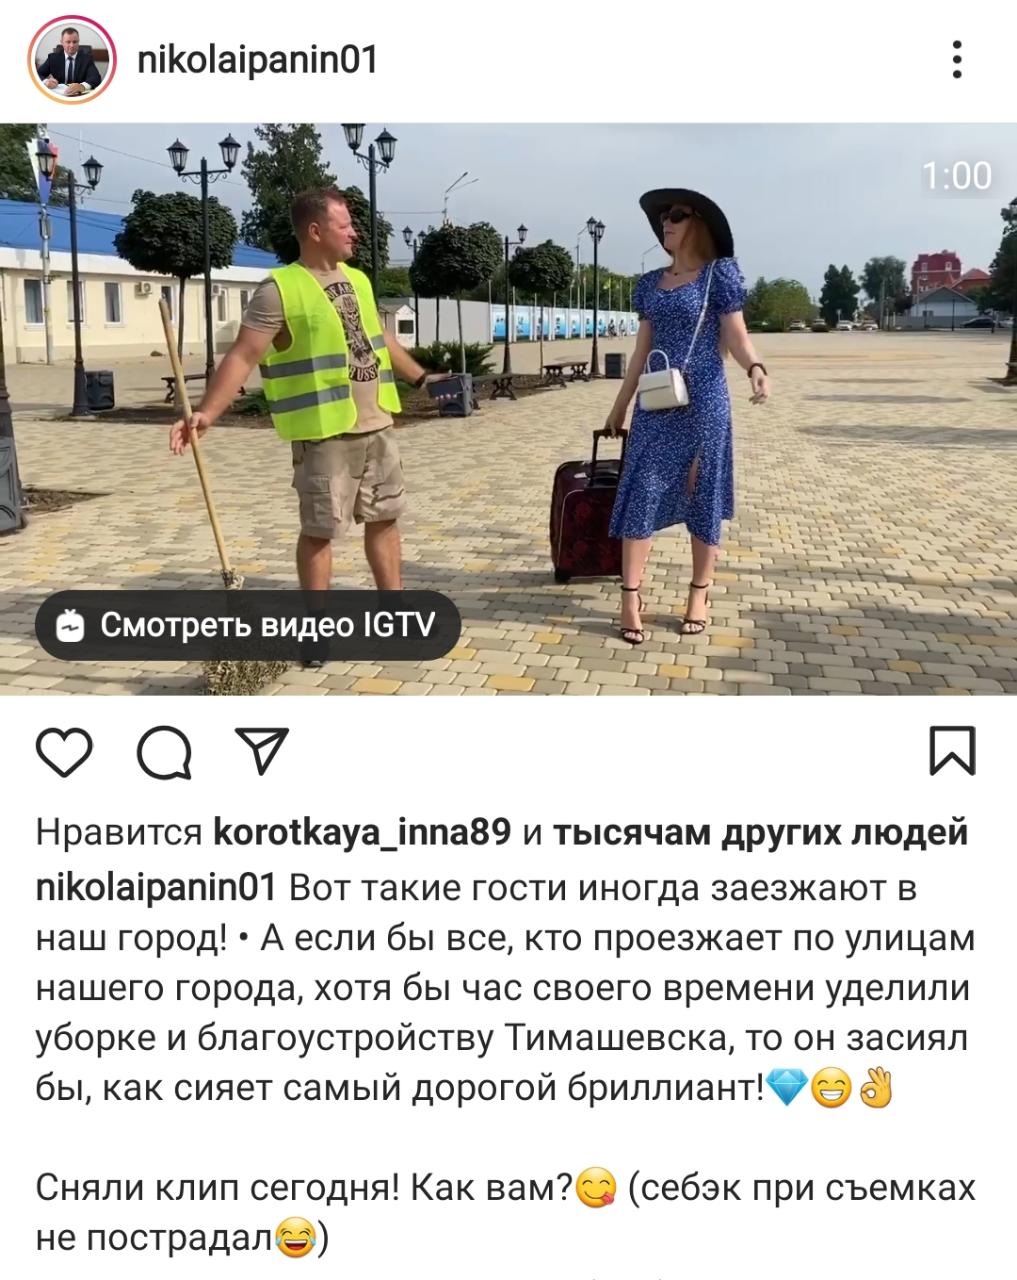 Мэр Тимашевска Панин «звезданул» в клипе с симпомпончиком ВИДЕО